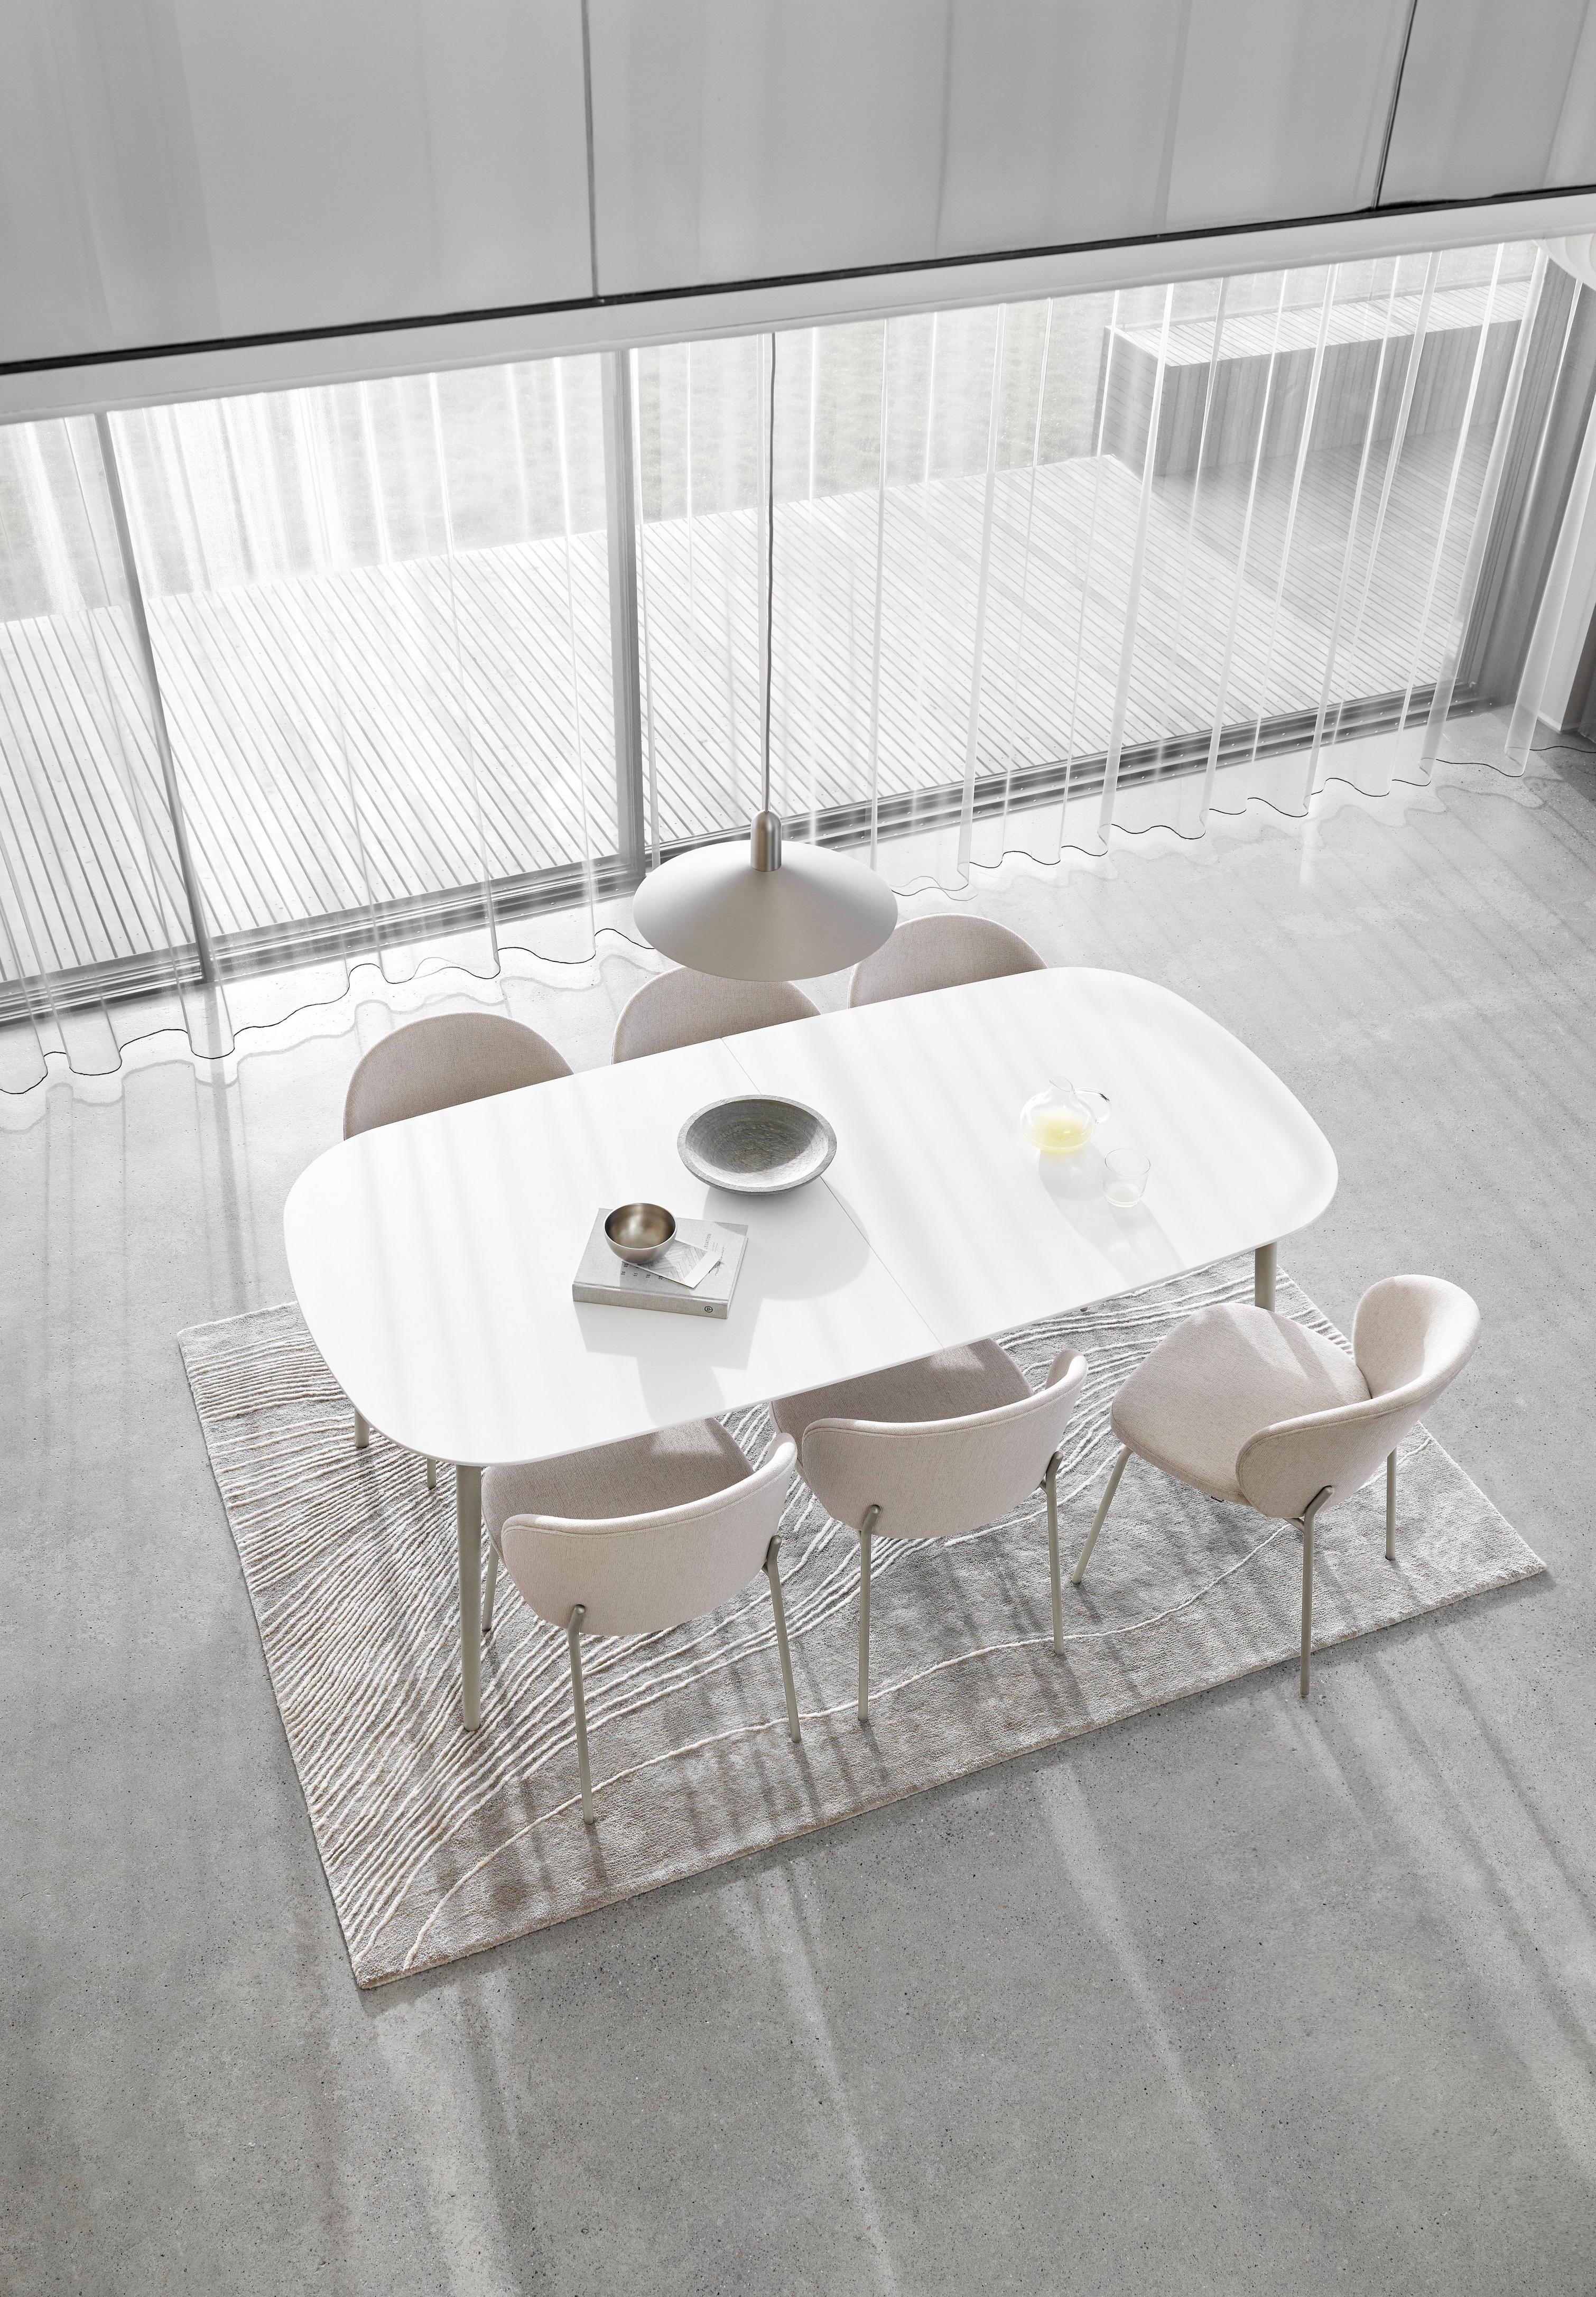 Comedor minimalista con mesa ovalada blanca, sillas, cortinas transparentes y alfombra texturizada.